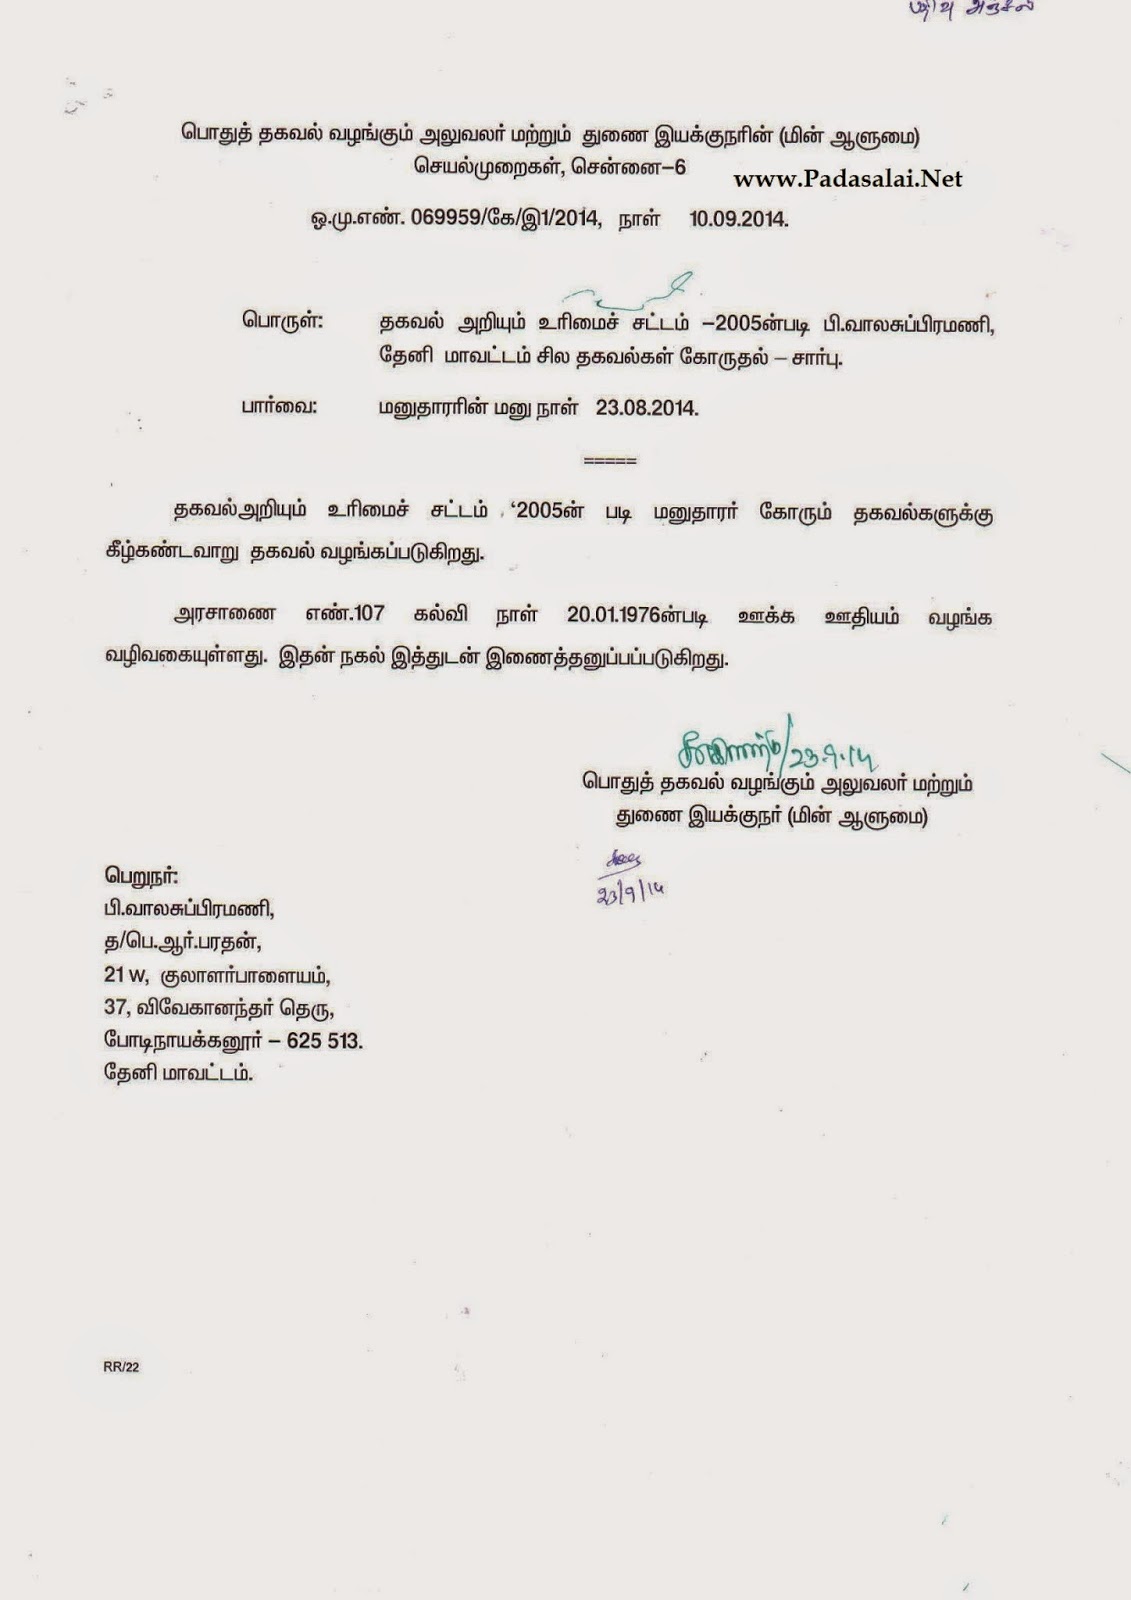 Tamil Letter Writing Format In Tamil - Tamil Nadu Police ...